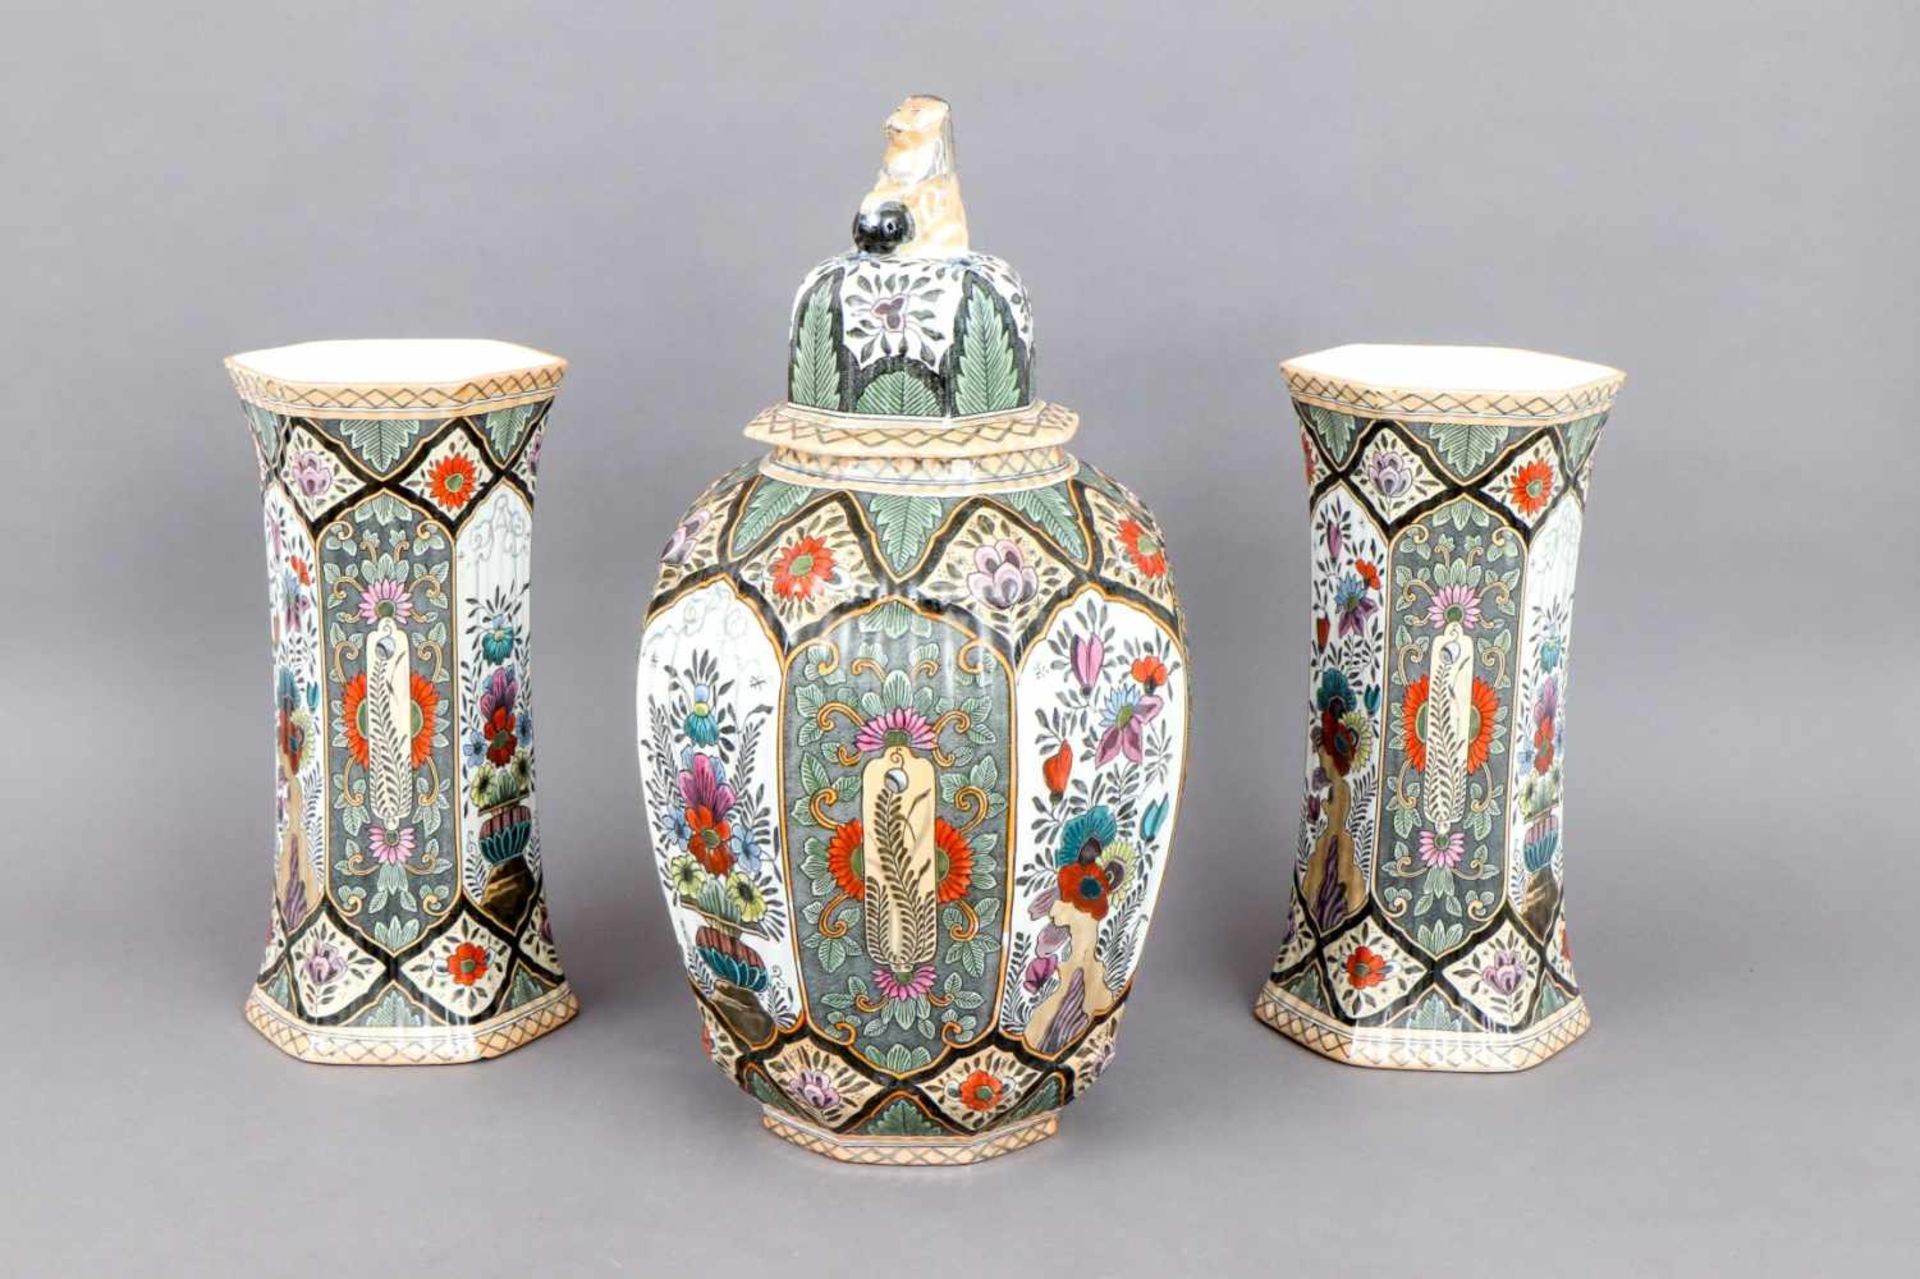 DELFT Keramik Vasen-Setum 1900/1920, 3-teilig, bestehend aus 1 Deckelvase und 2 6-Kant-Vasen, - Bild 2 aus 4